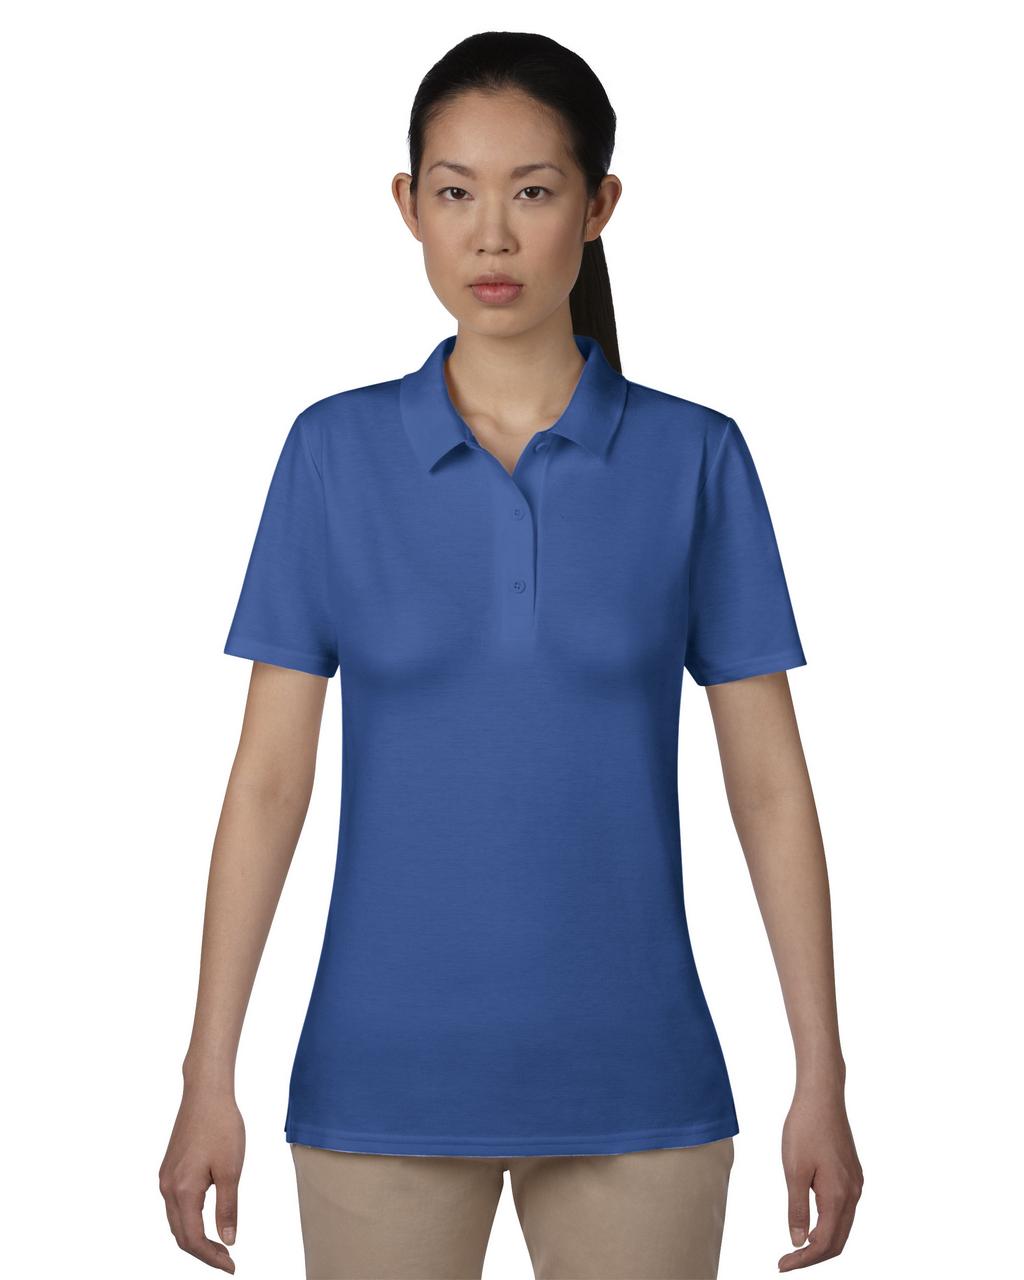 Ženska polo majica s tiskom (opcija) 